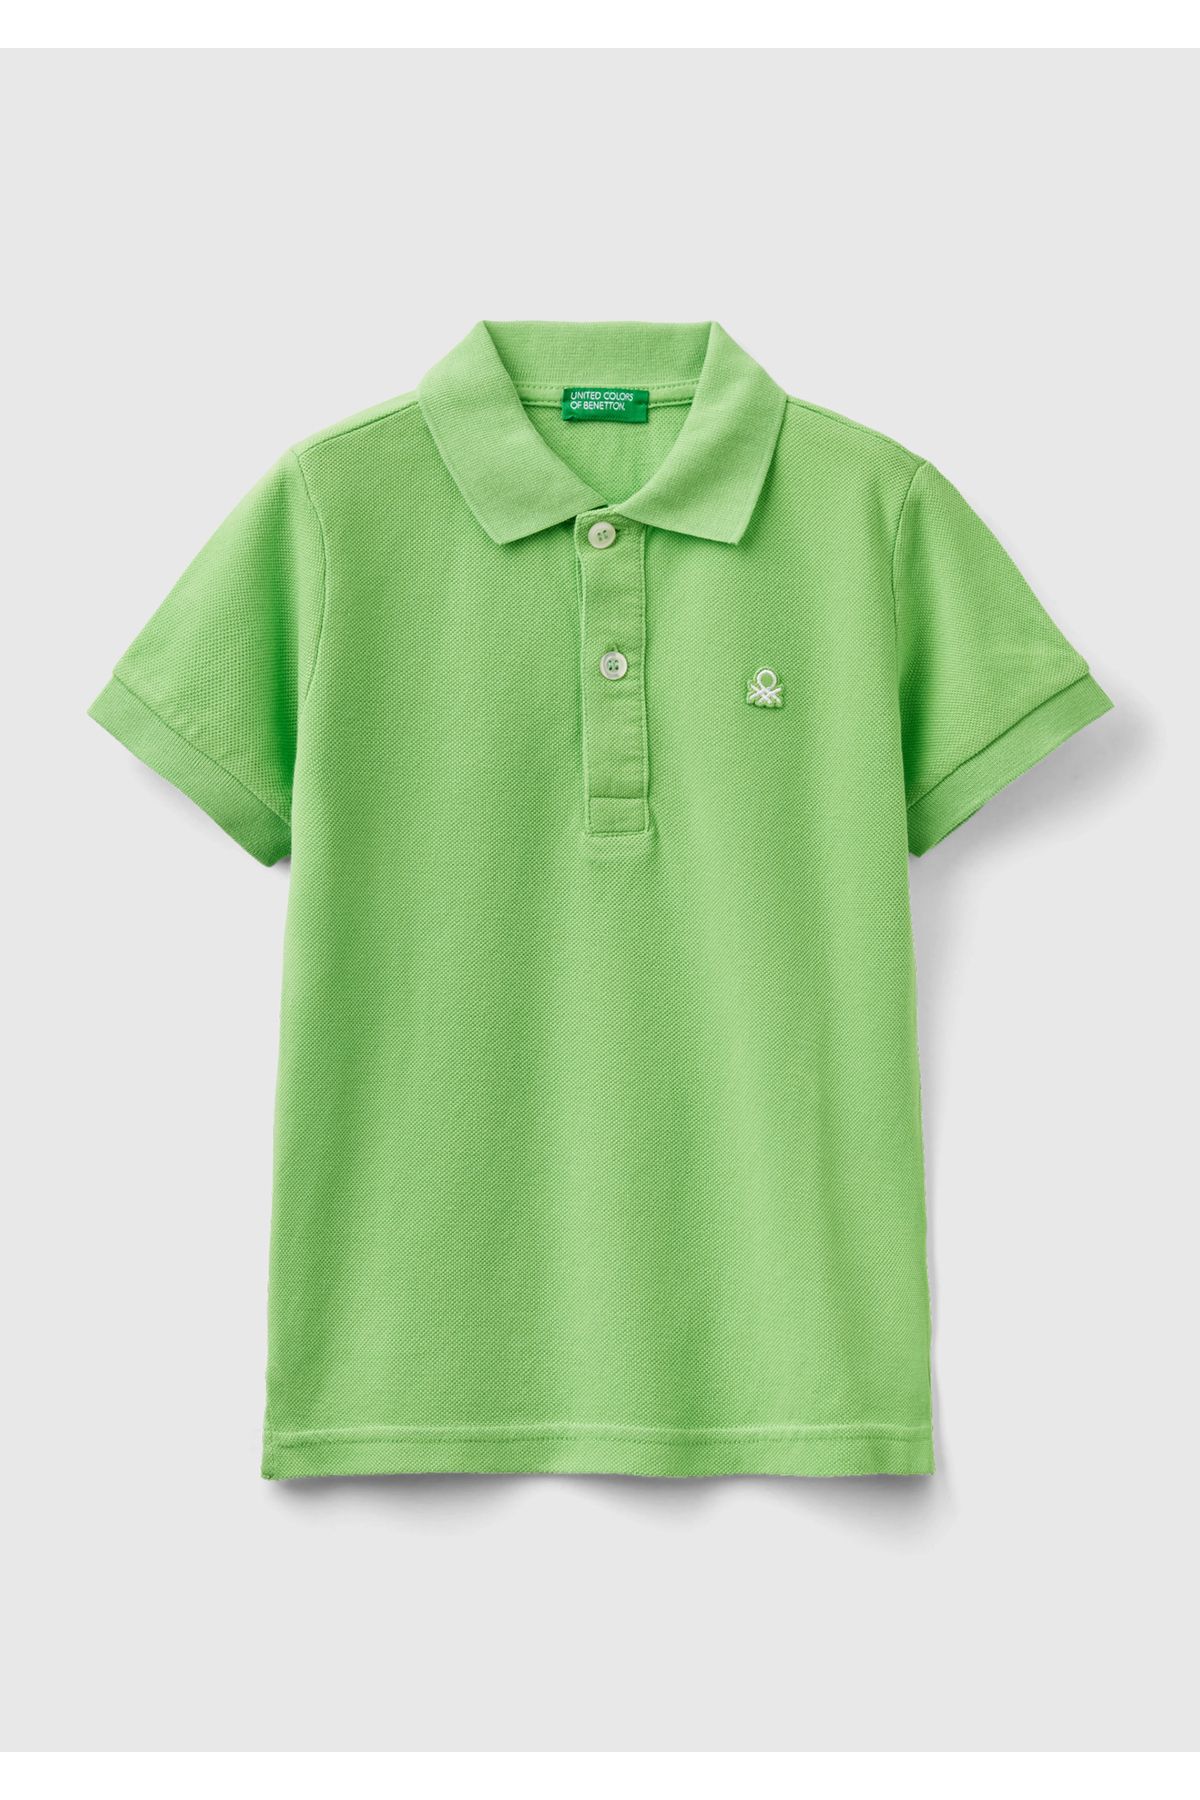 United Colors of Benetton Erkek Çocuk Fıstık Yeşili Logolu Pike Polo T-Shirt